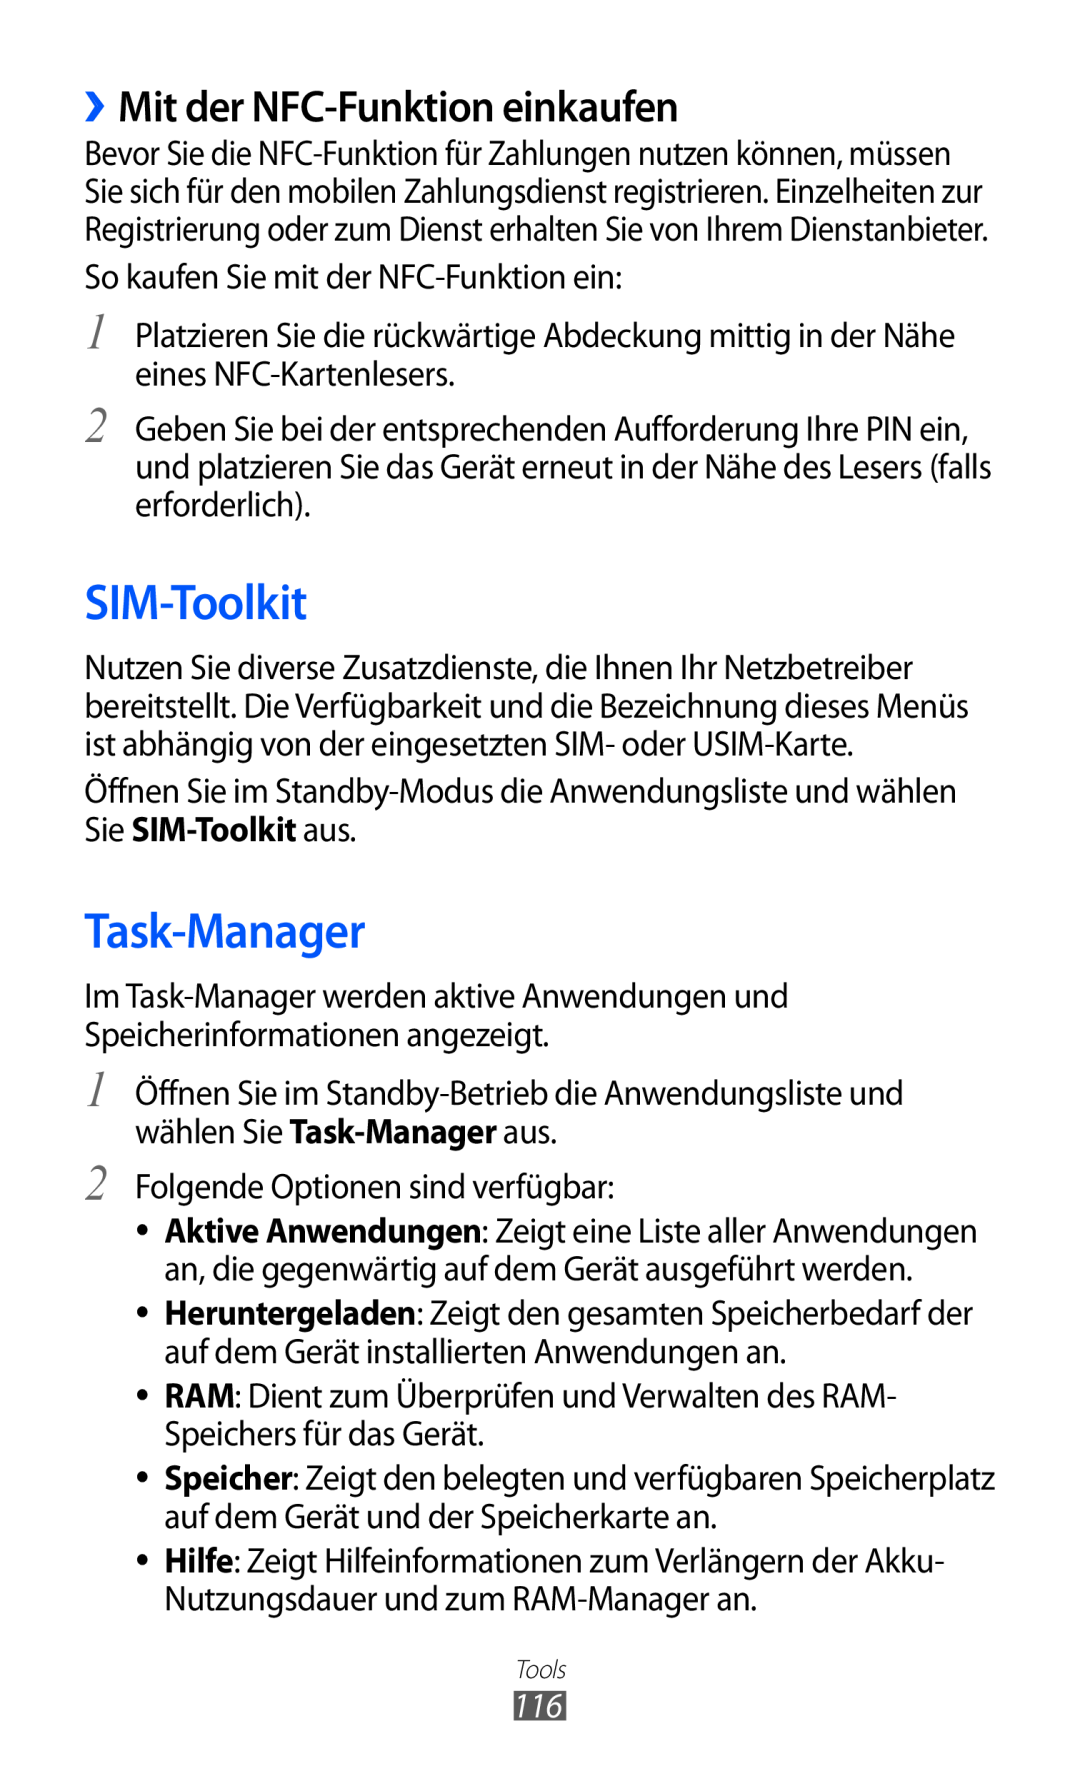 Samsung GT-S6500RWAVGR, GT-S6500RWDTUR, GT-S6500HADDBT manual SIM-Toolkit, Task-Manager, ››Mit der NFC-Funktion einkaufen 